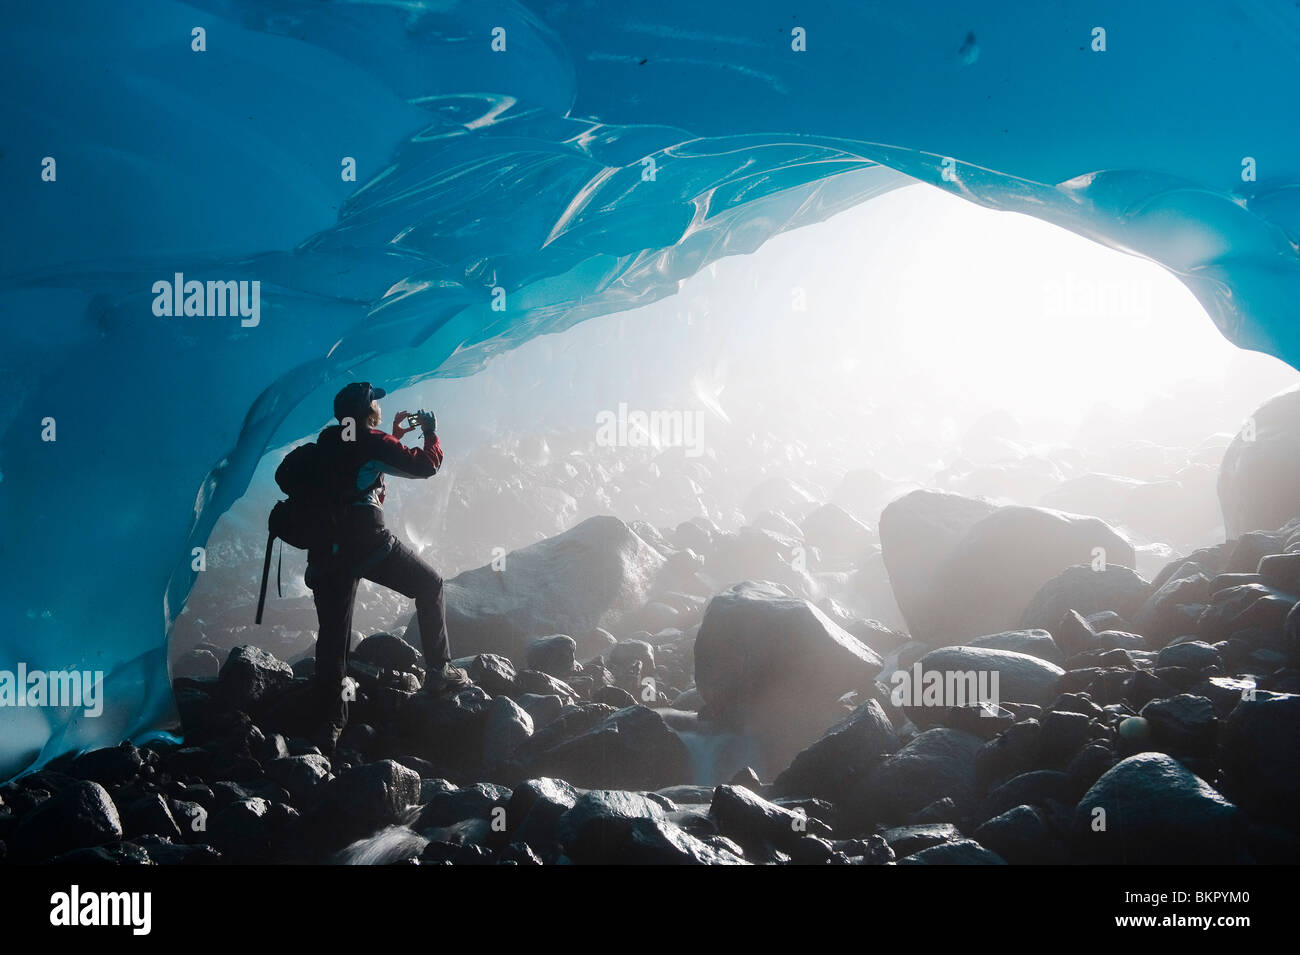 Un excursionista toma una fotografía de la entrada de una cueva de hielo desde el interior del glaciar Mendenhall, sureste de Alaska, Verano Foto de stock